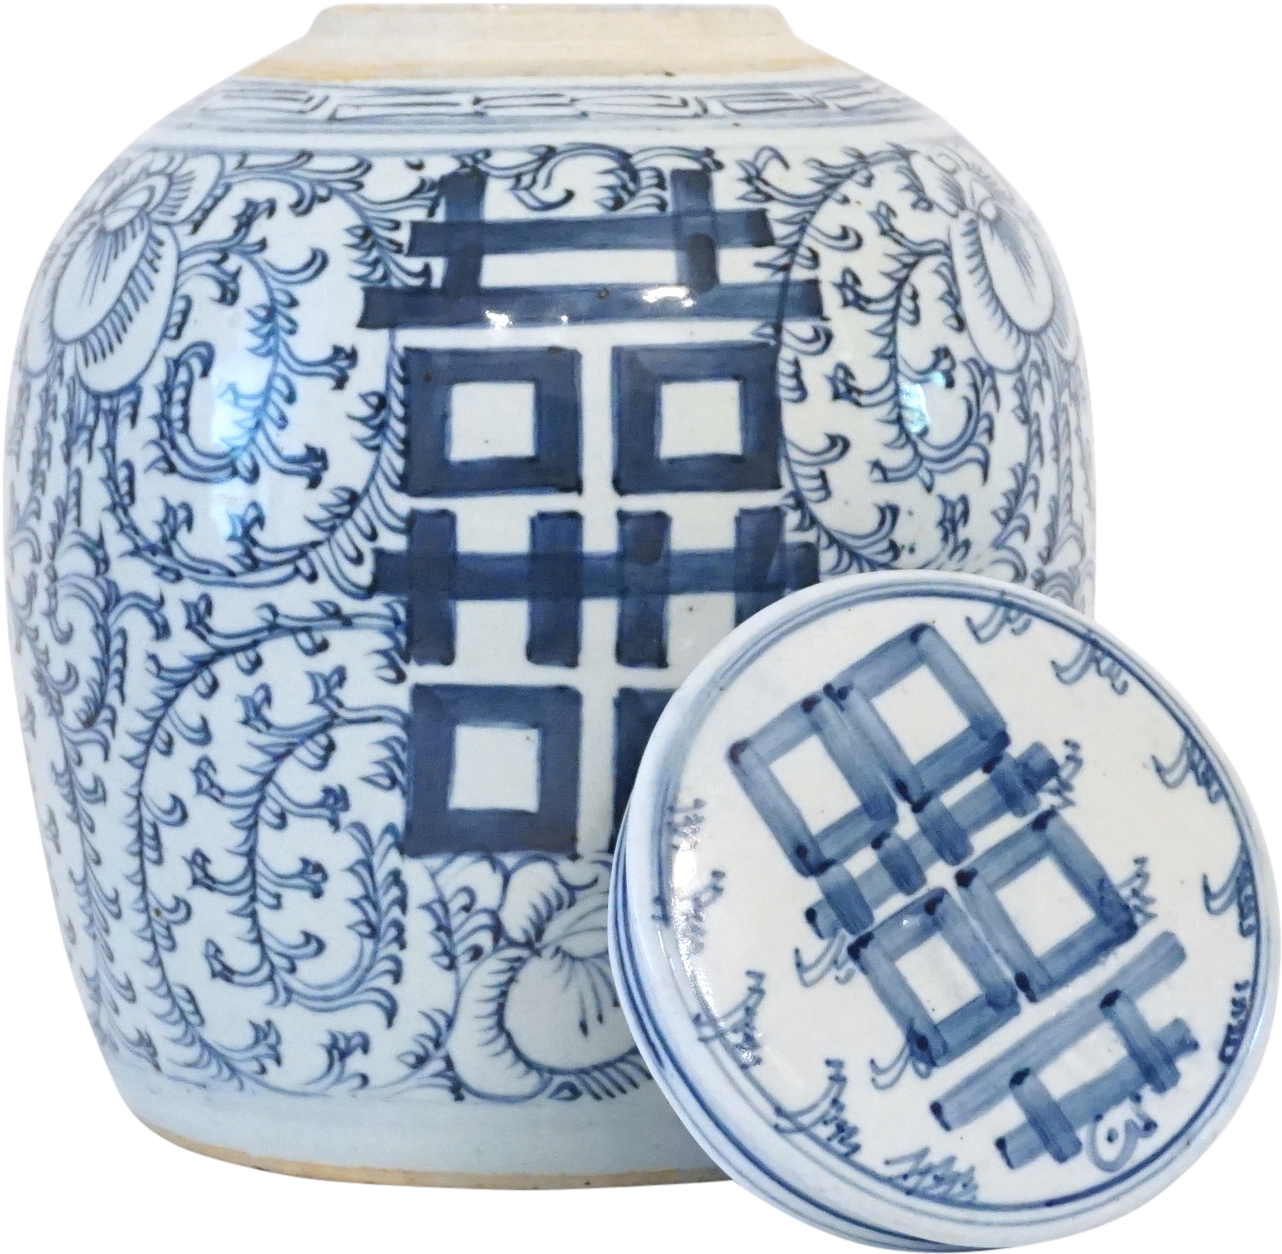 Ceramiczny słoik podwójnego szczęścia, niebiesko-biała porcelana